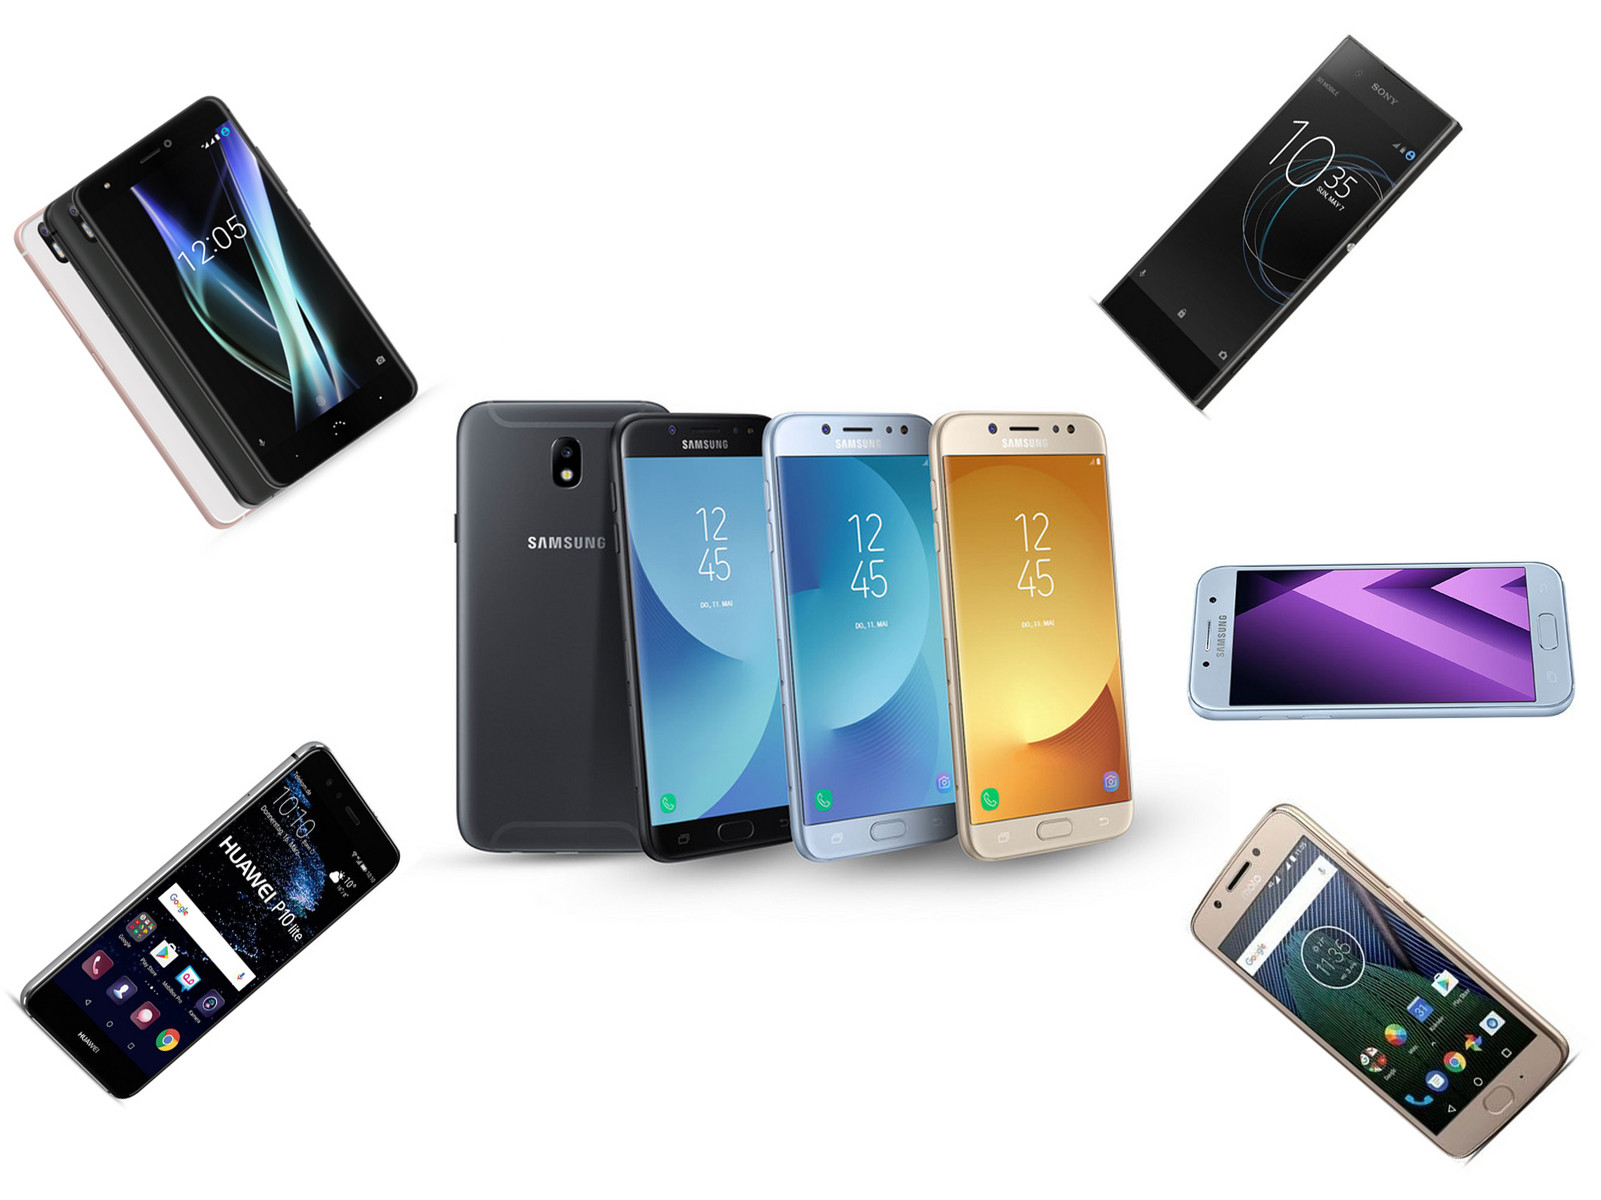 Maori thin Cruel The Best Samsung Galaxy J5 (2017) Alternatives - NotebookCheck.net Reviews